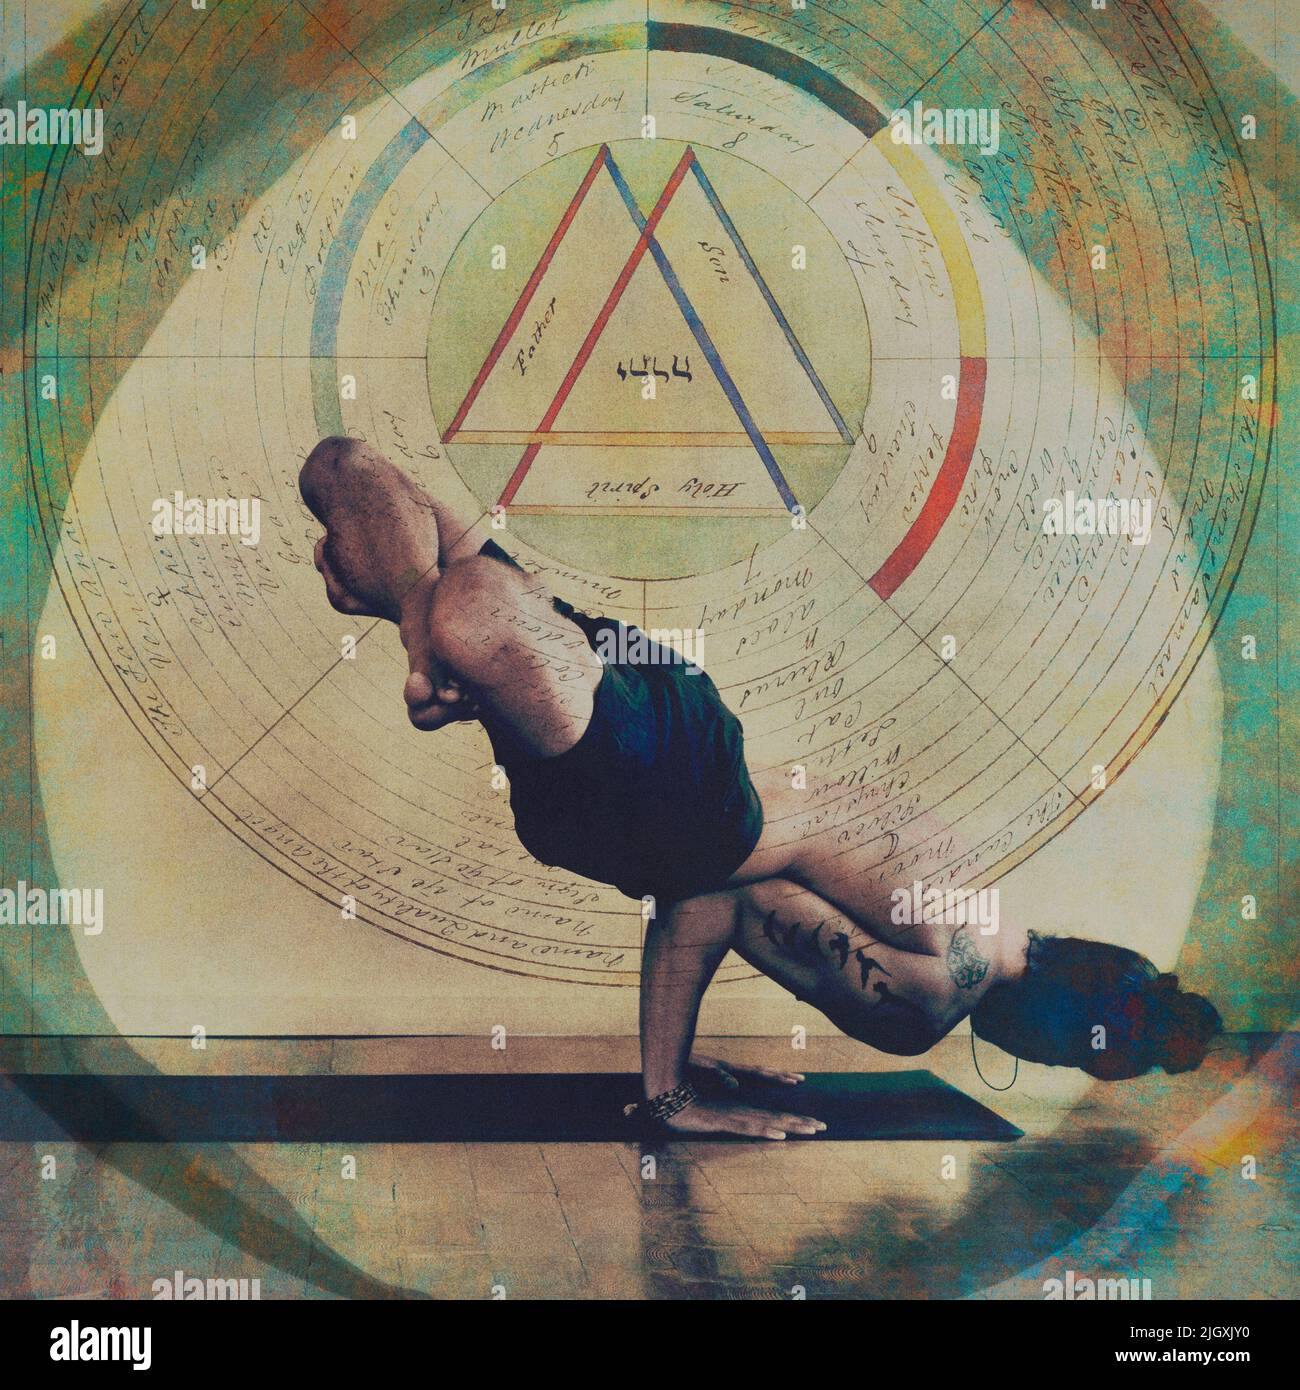 Homme pratiquant le yoga dans un équilibre avancé des bras. Illustration basée sur la photo avec mandala gnostique vintage. Banque D'Images